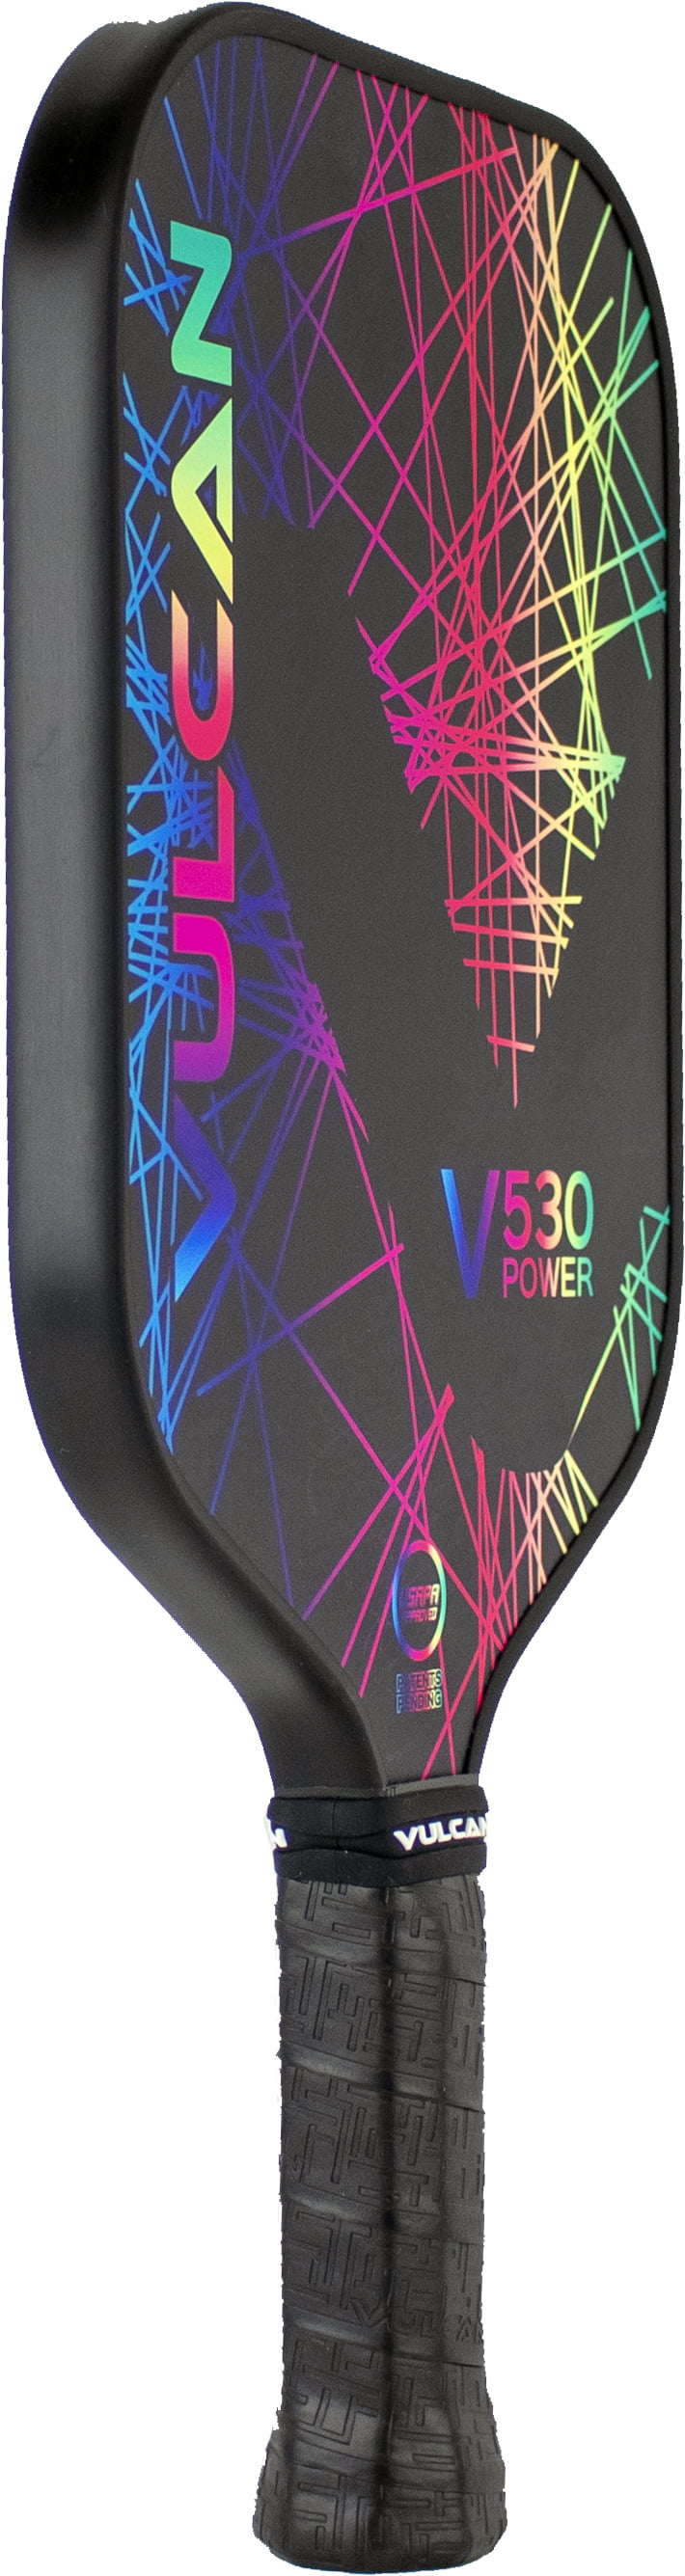 brand new in packaging  New Vulcan V530 Power Pickleball Paddle Rainbow Laser 